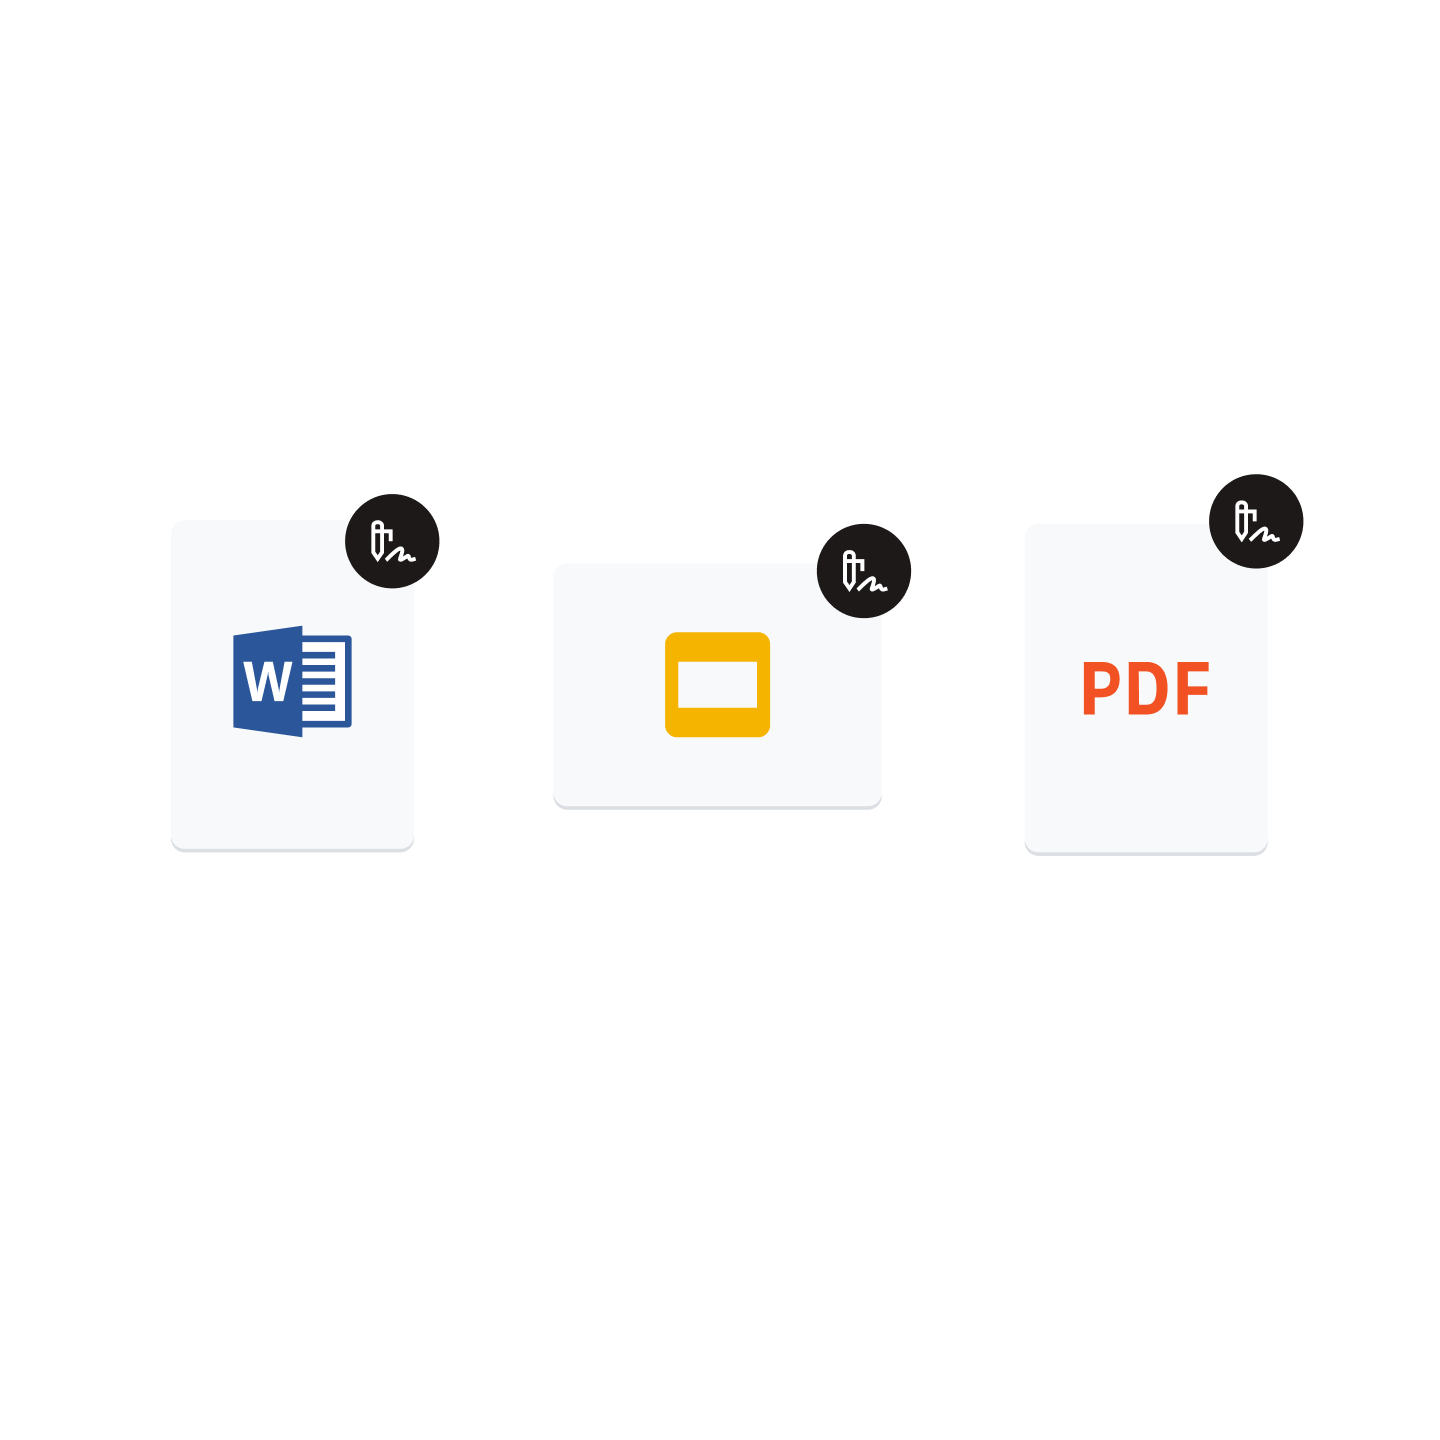 Значок Microsoft Word, значок Google Презентации и значок PDF